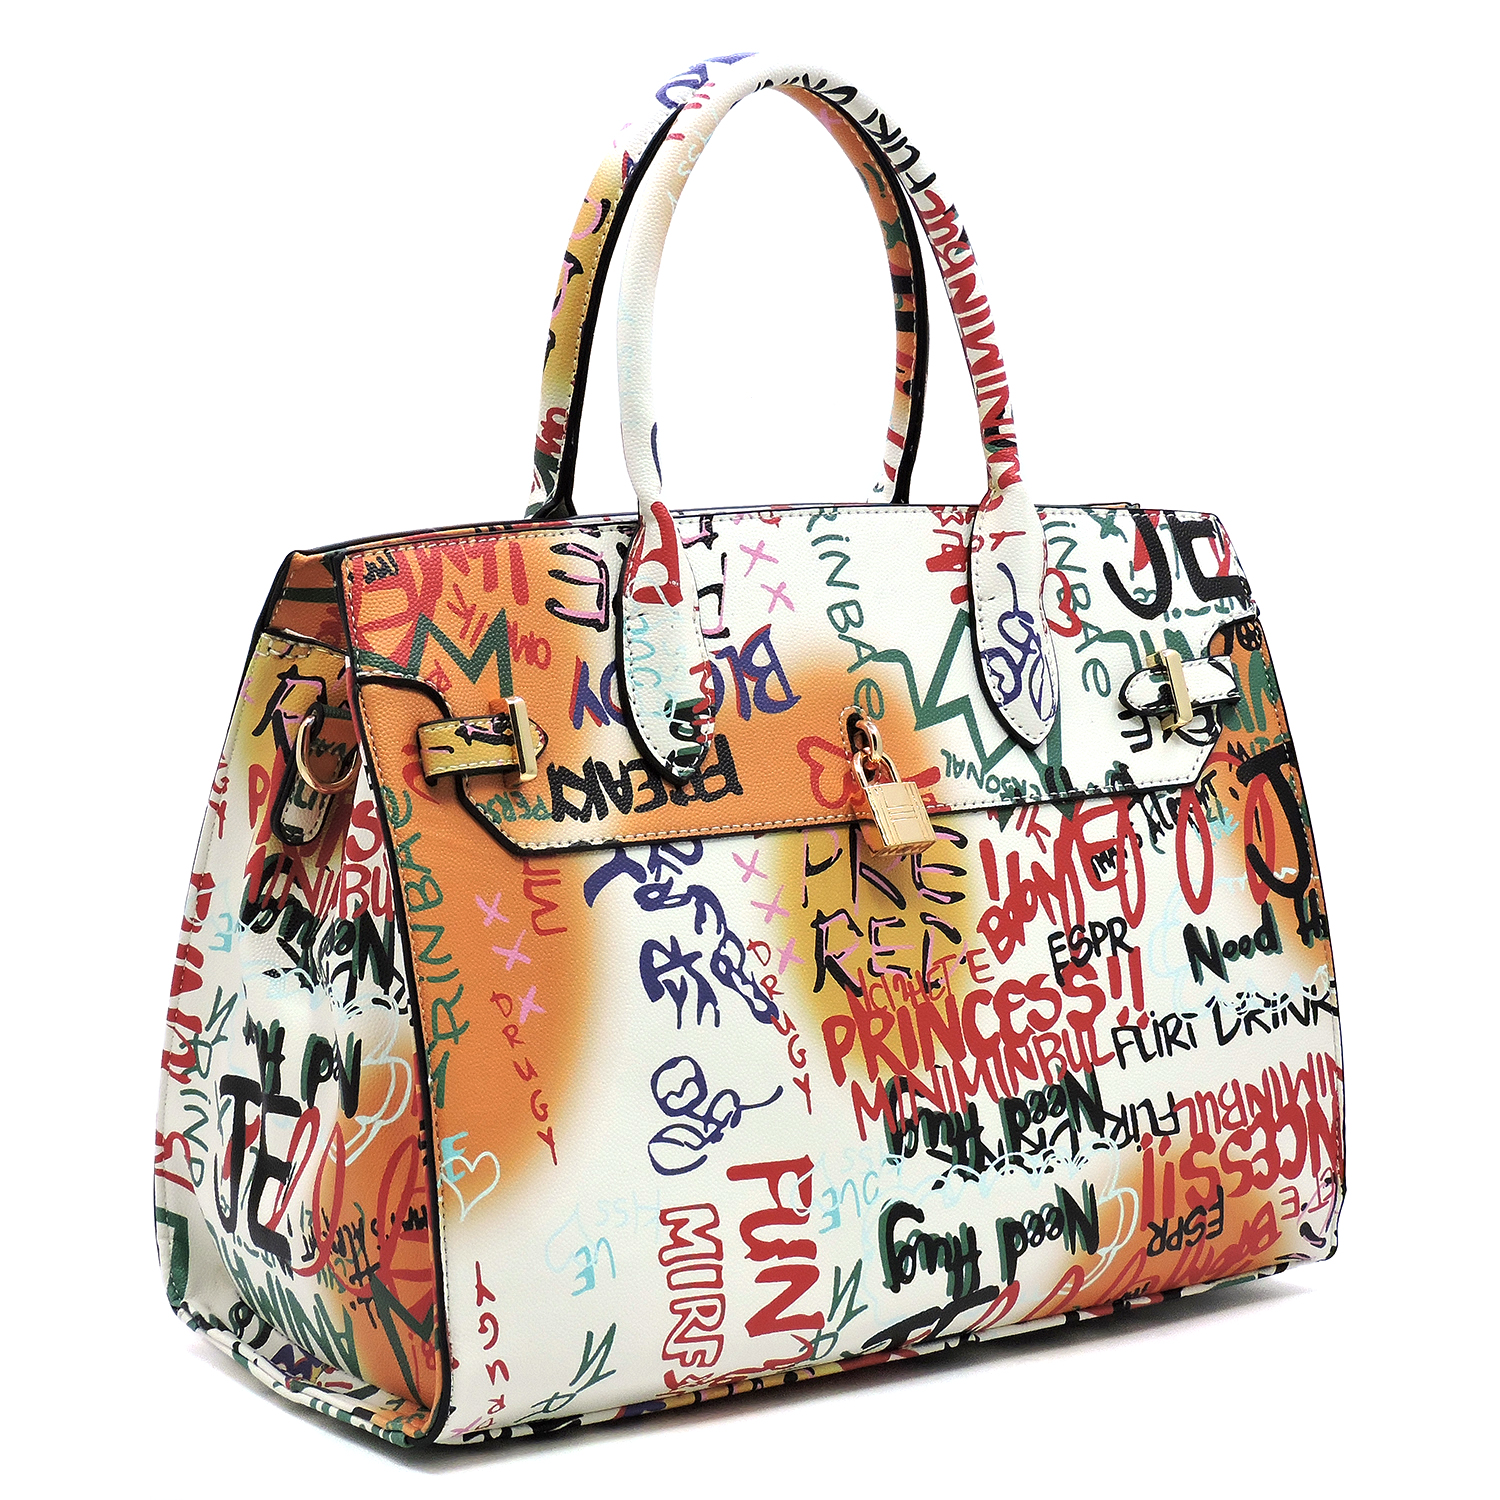 Graffiti Padlock Handbag- Carmel - Angies